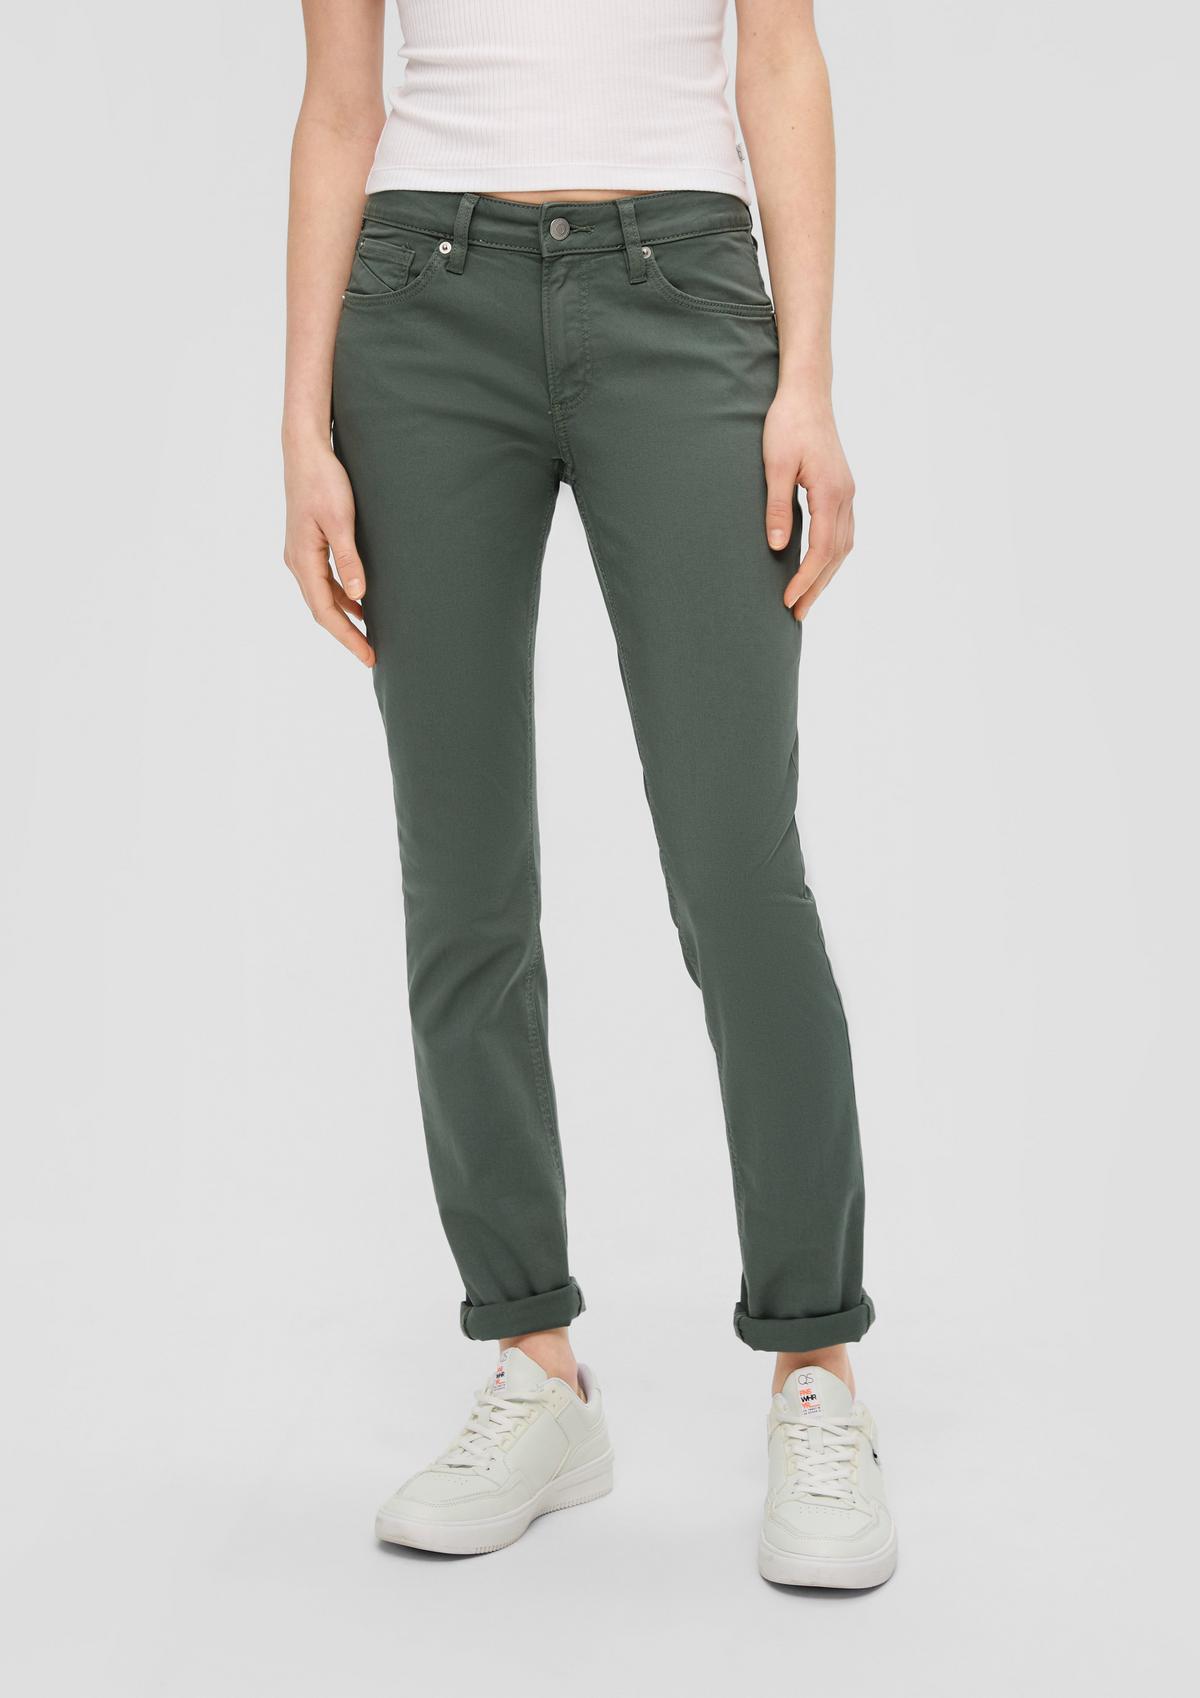 s.Oliver Jeans / Regular Fit / Mid Rise / Slim Fit